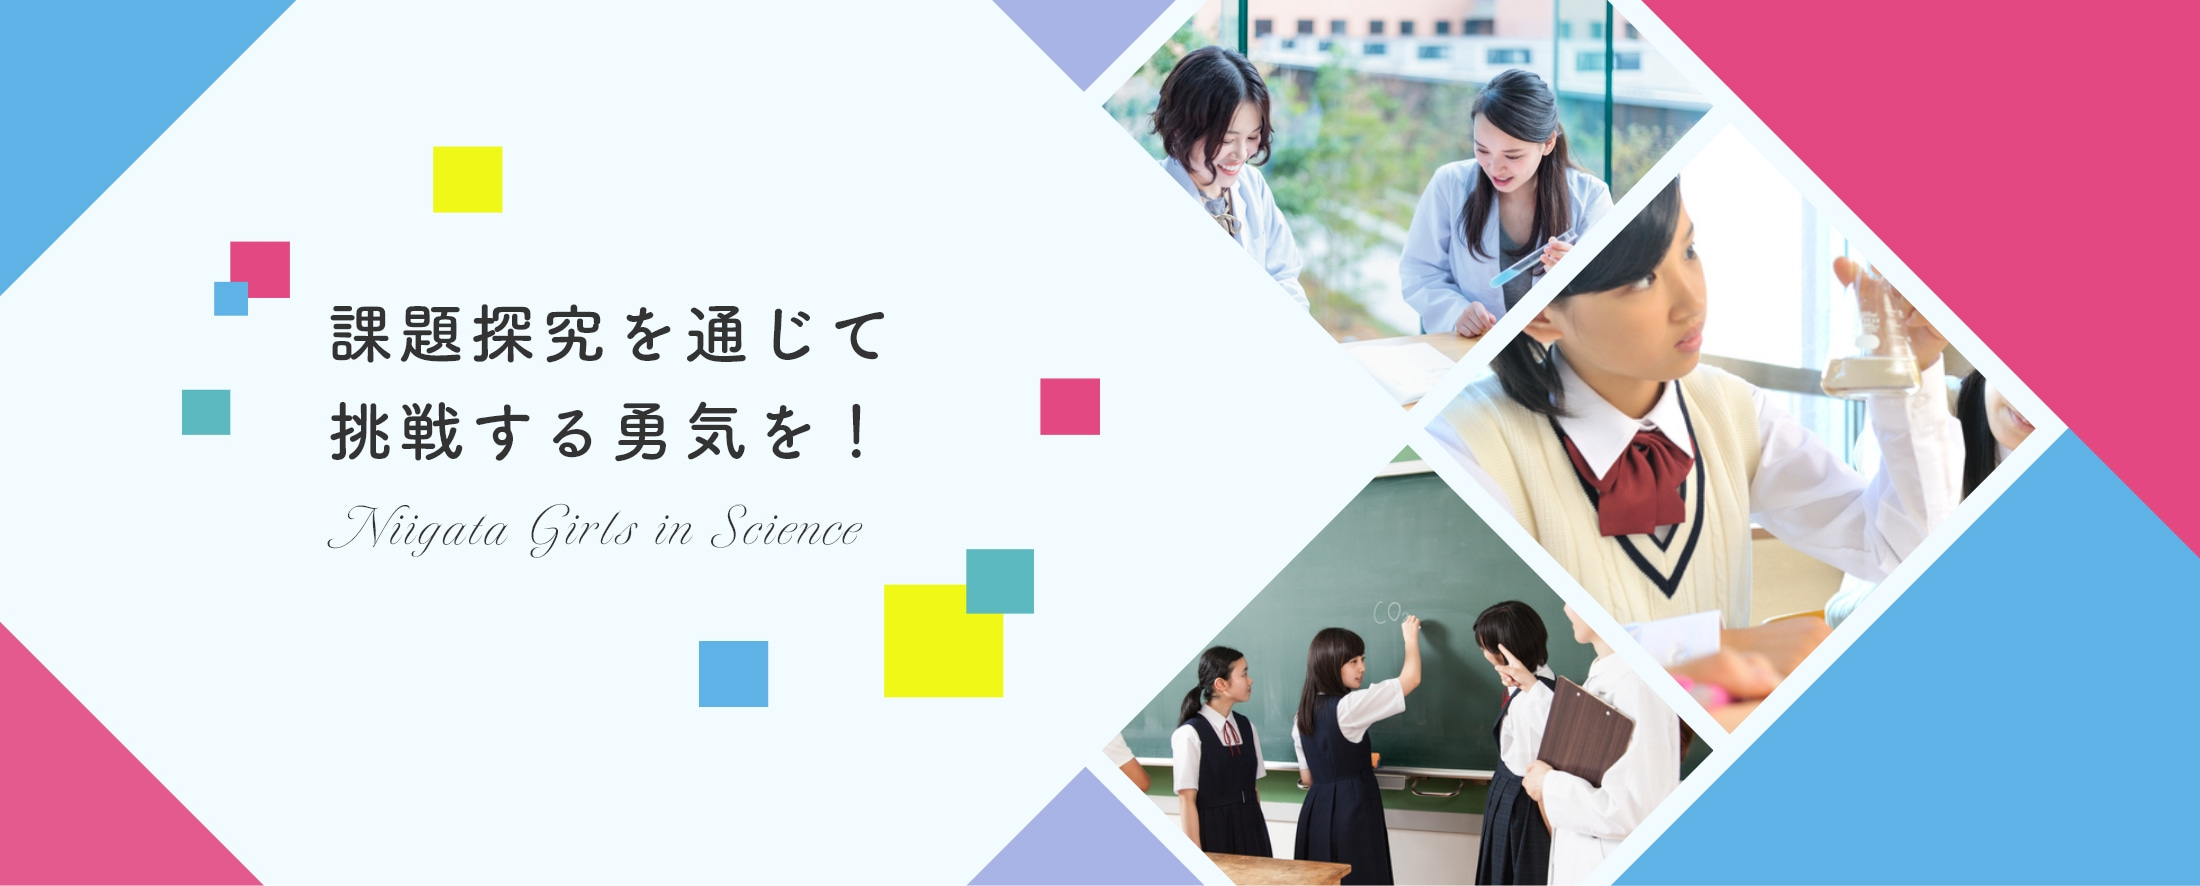 課題探究を通じて挑戦する勇気を！ Niigata Girls in Science